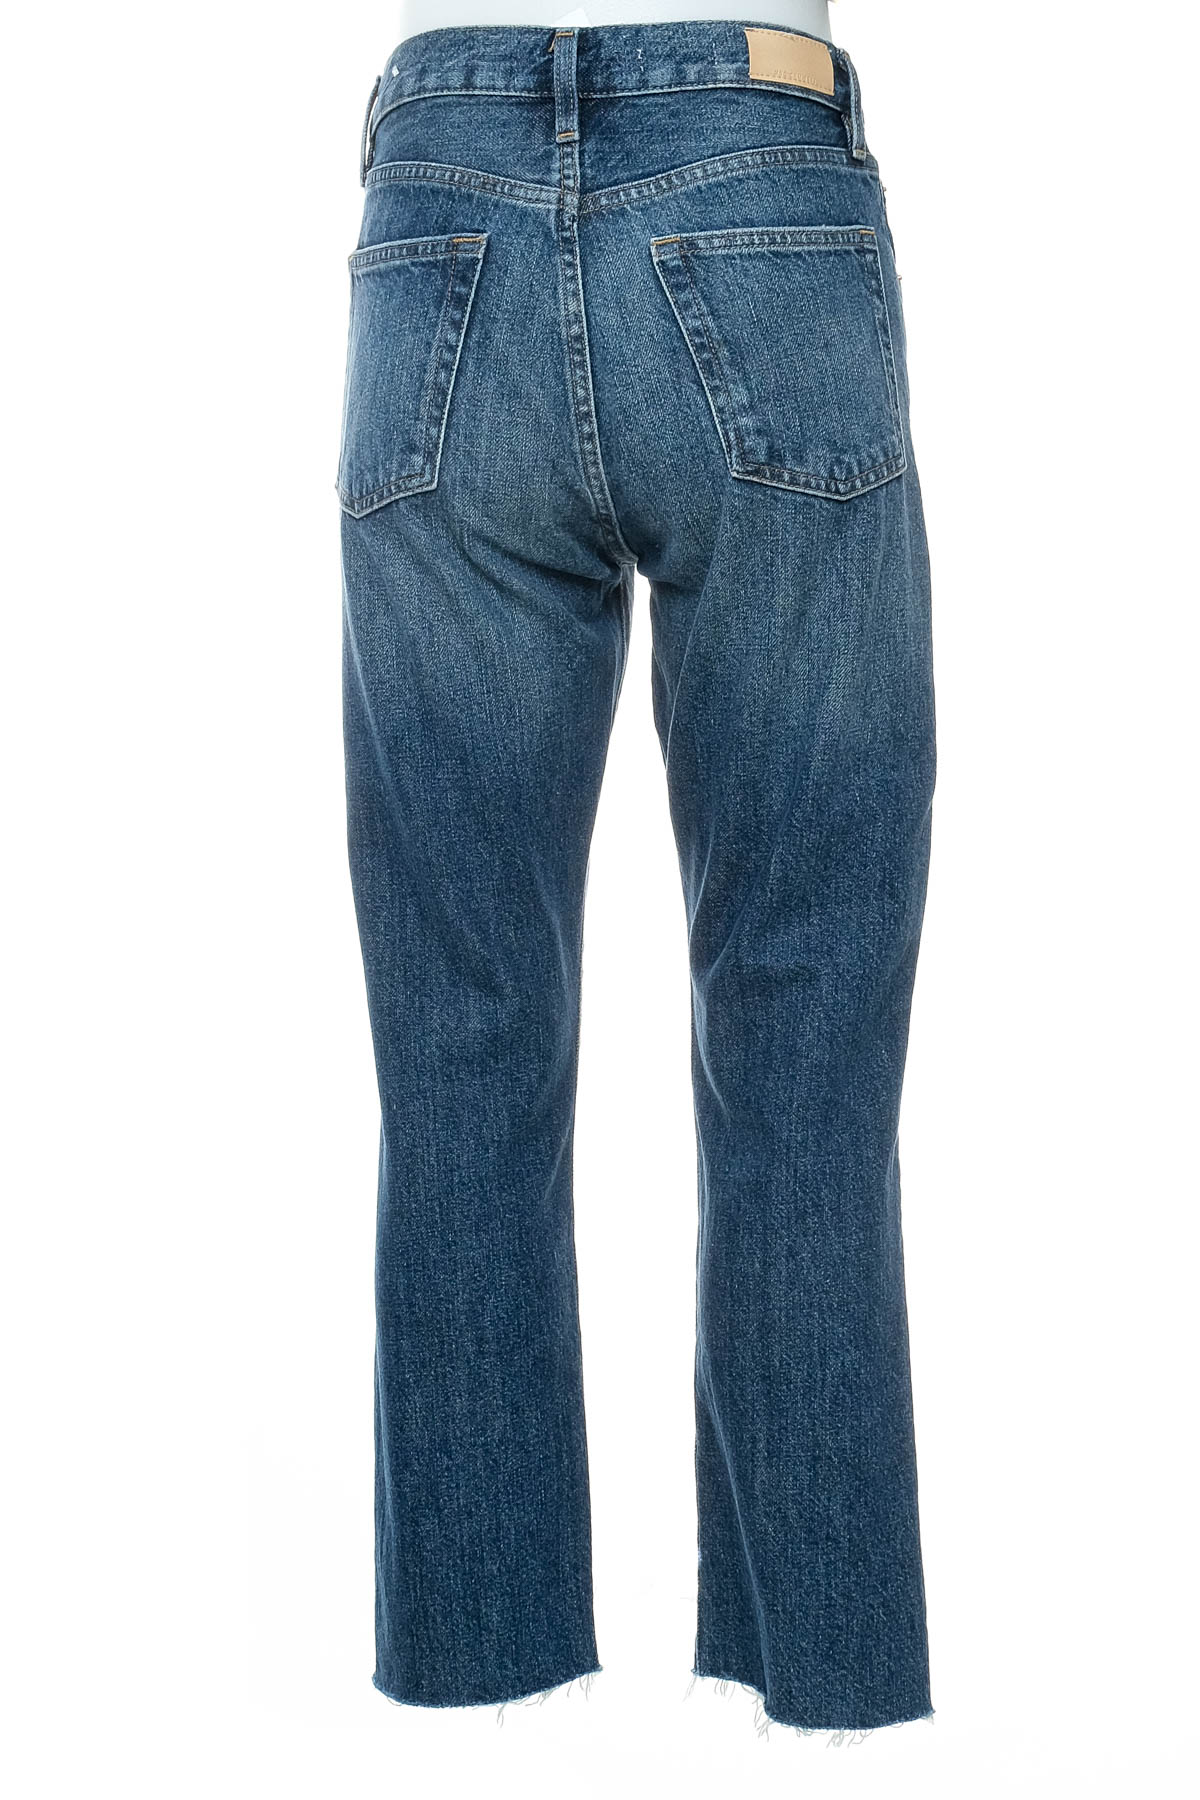 Women's jeans - MNG Denim - 1